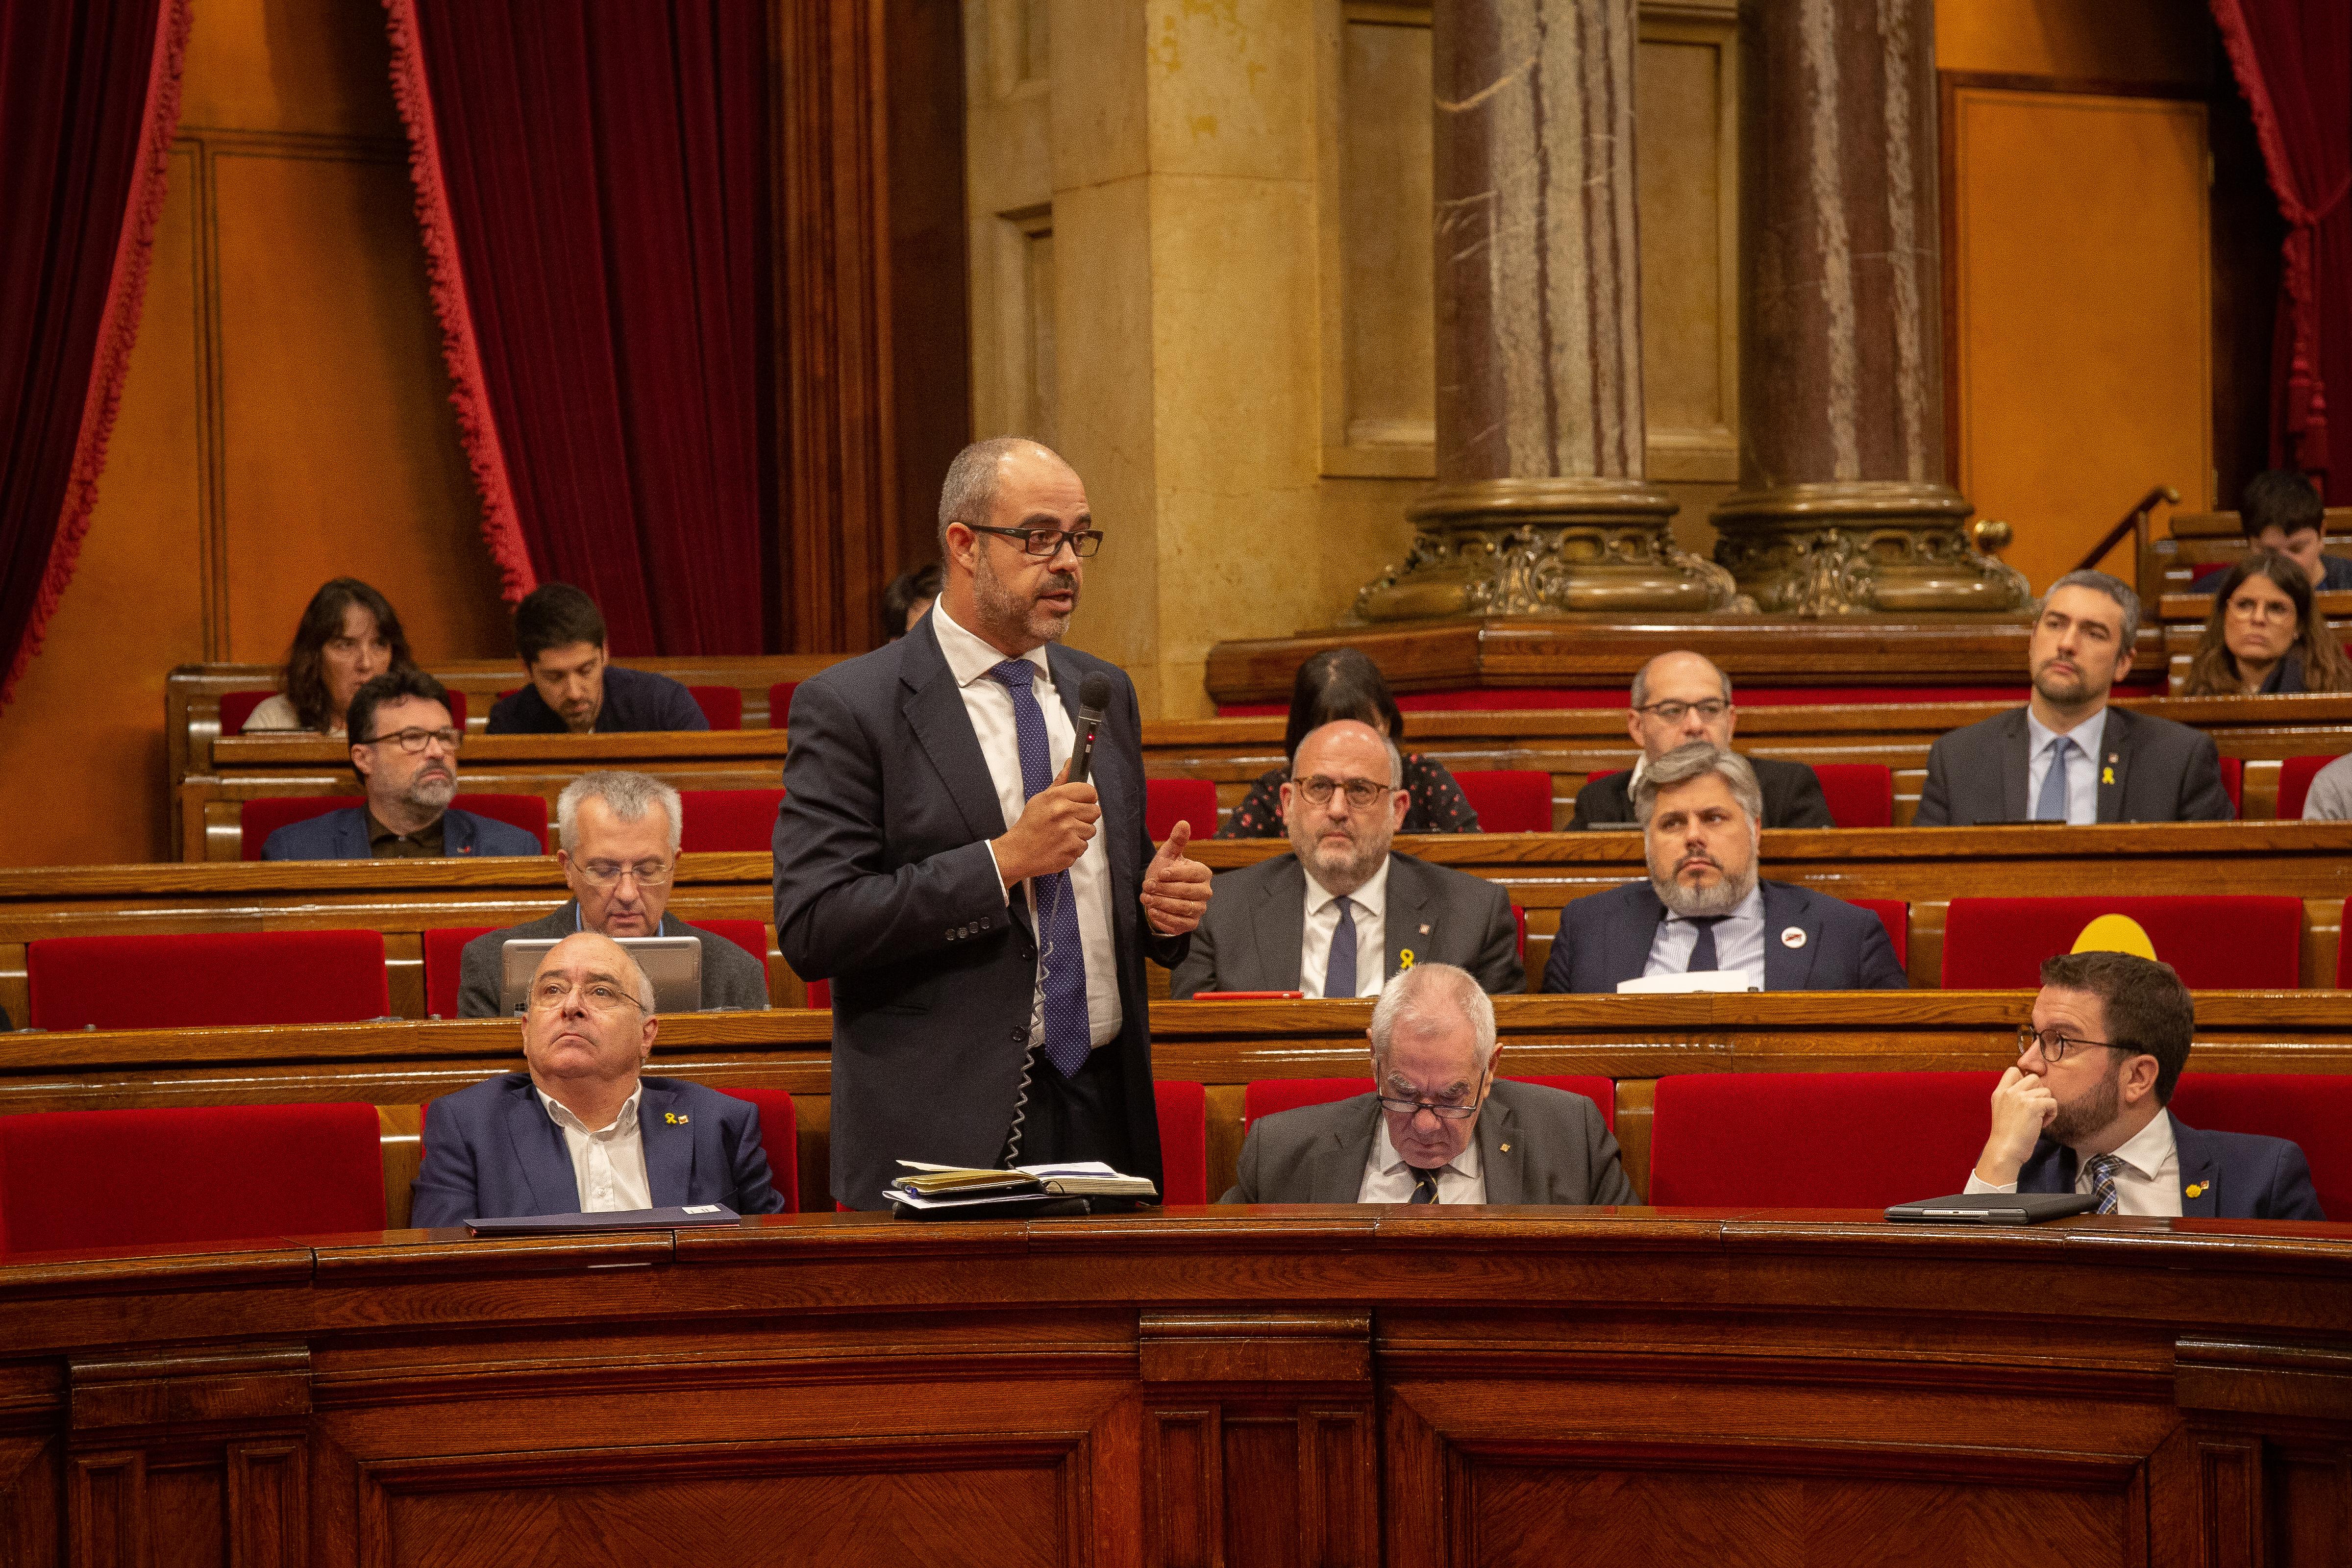  El consejero de Interior del Gobierno de la Generalidat de Catalunya, Miquel Buch, interviene en una sesión plenaria en el Parlament.